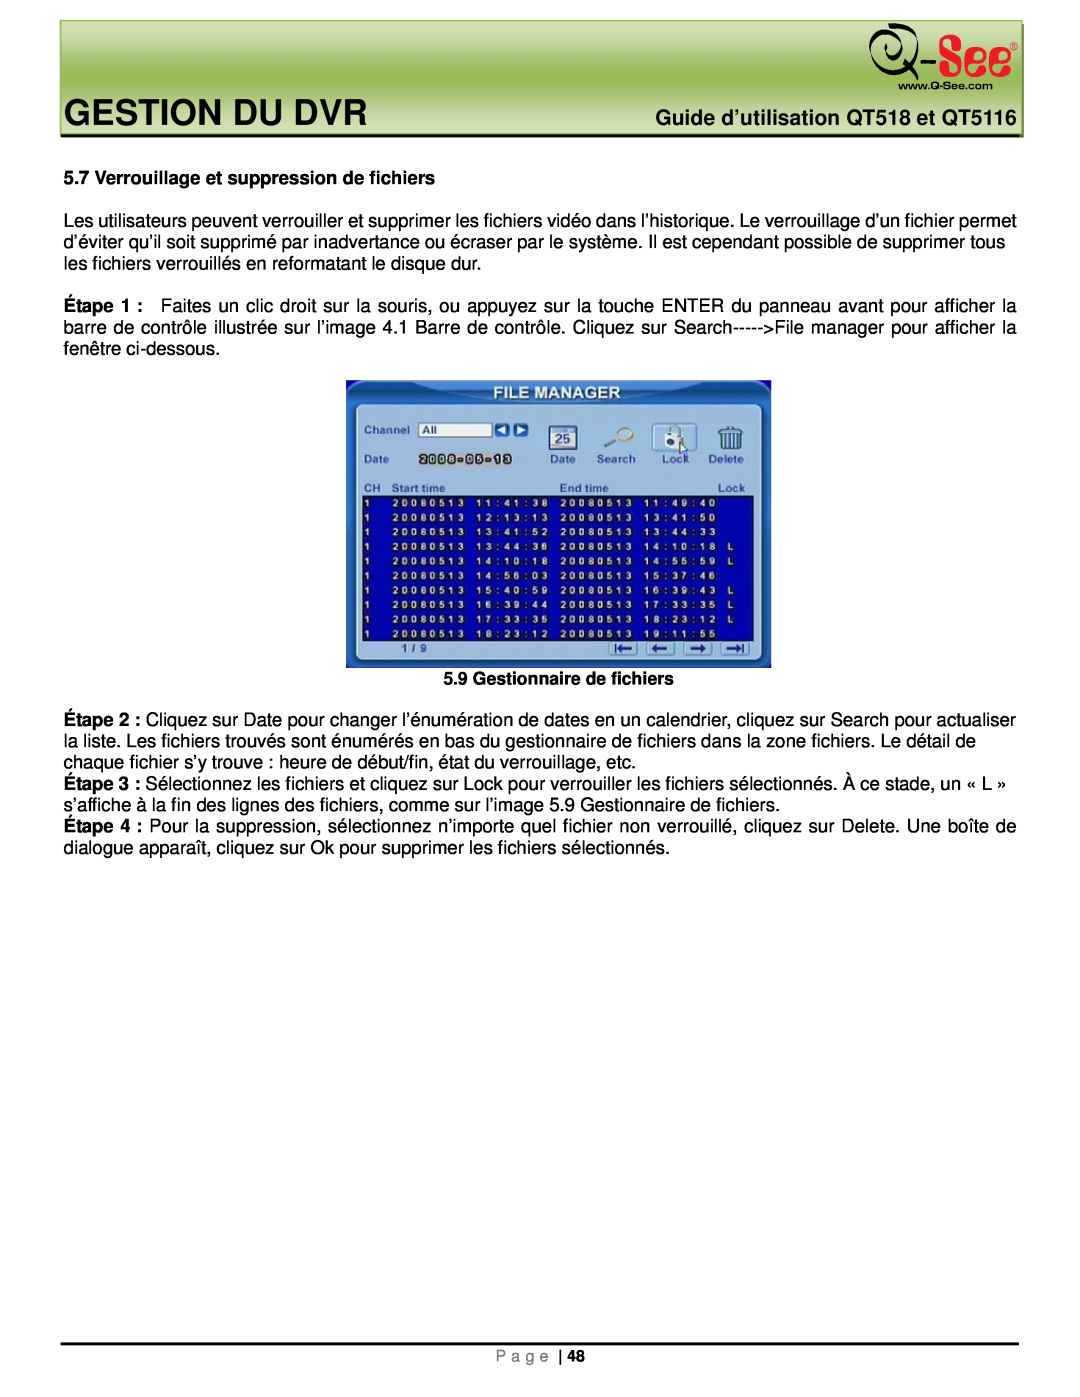 Q-See manual Gestion Du Dvr, Guide d’utilisation QT518 et QT5116, Verrouillage et suppression de fichiers 